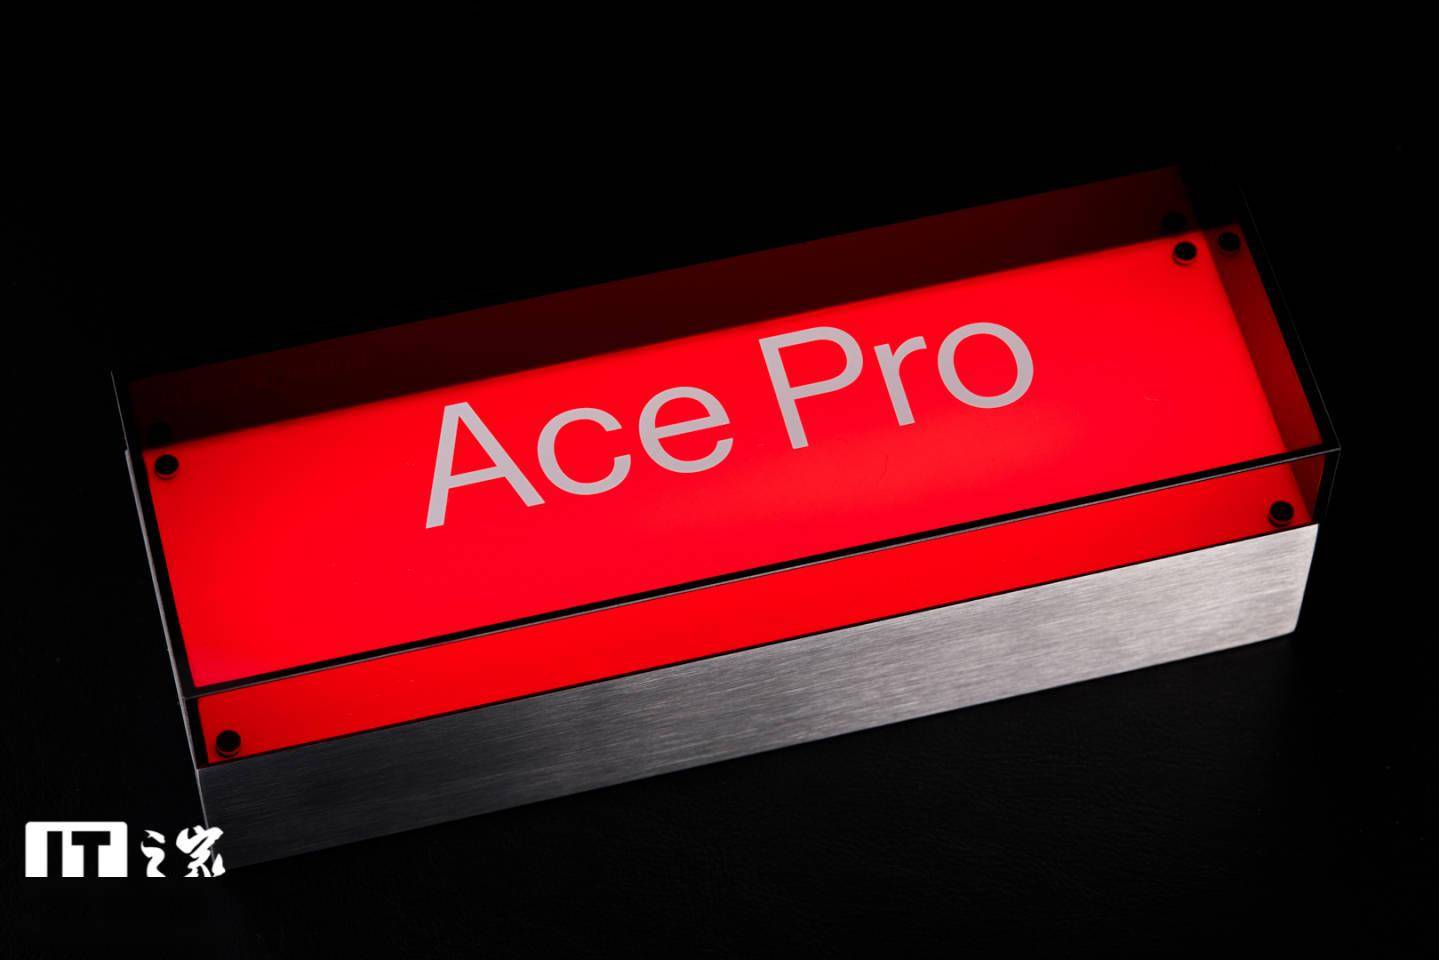 一加Ace Pro新品发布会邀请函抵达IT之家，是一款“既要又要灯”